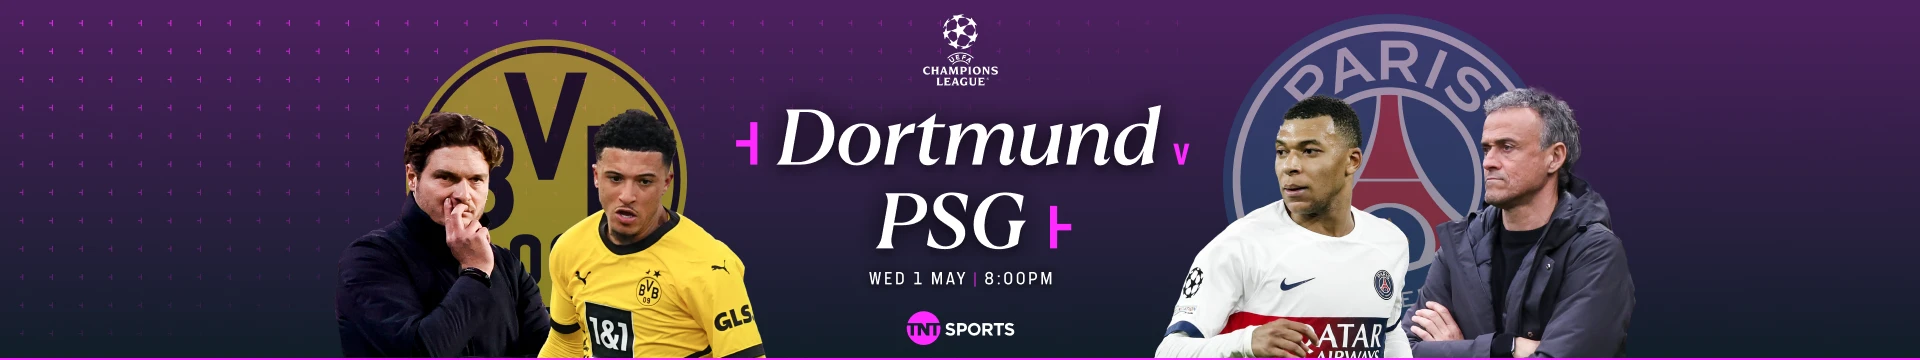 Dortmund v PSG Wednesday 1 May at 8pm